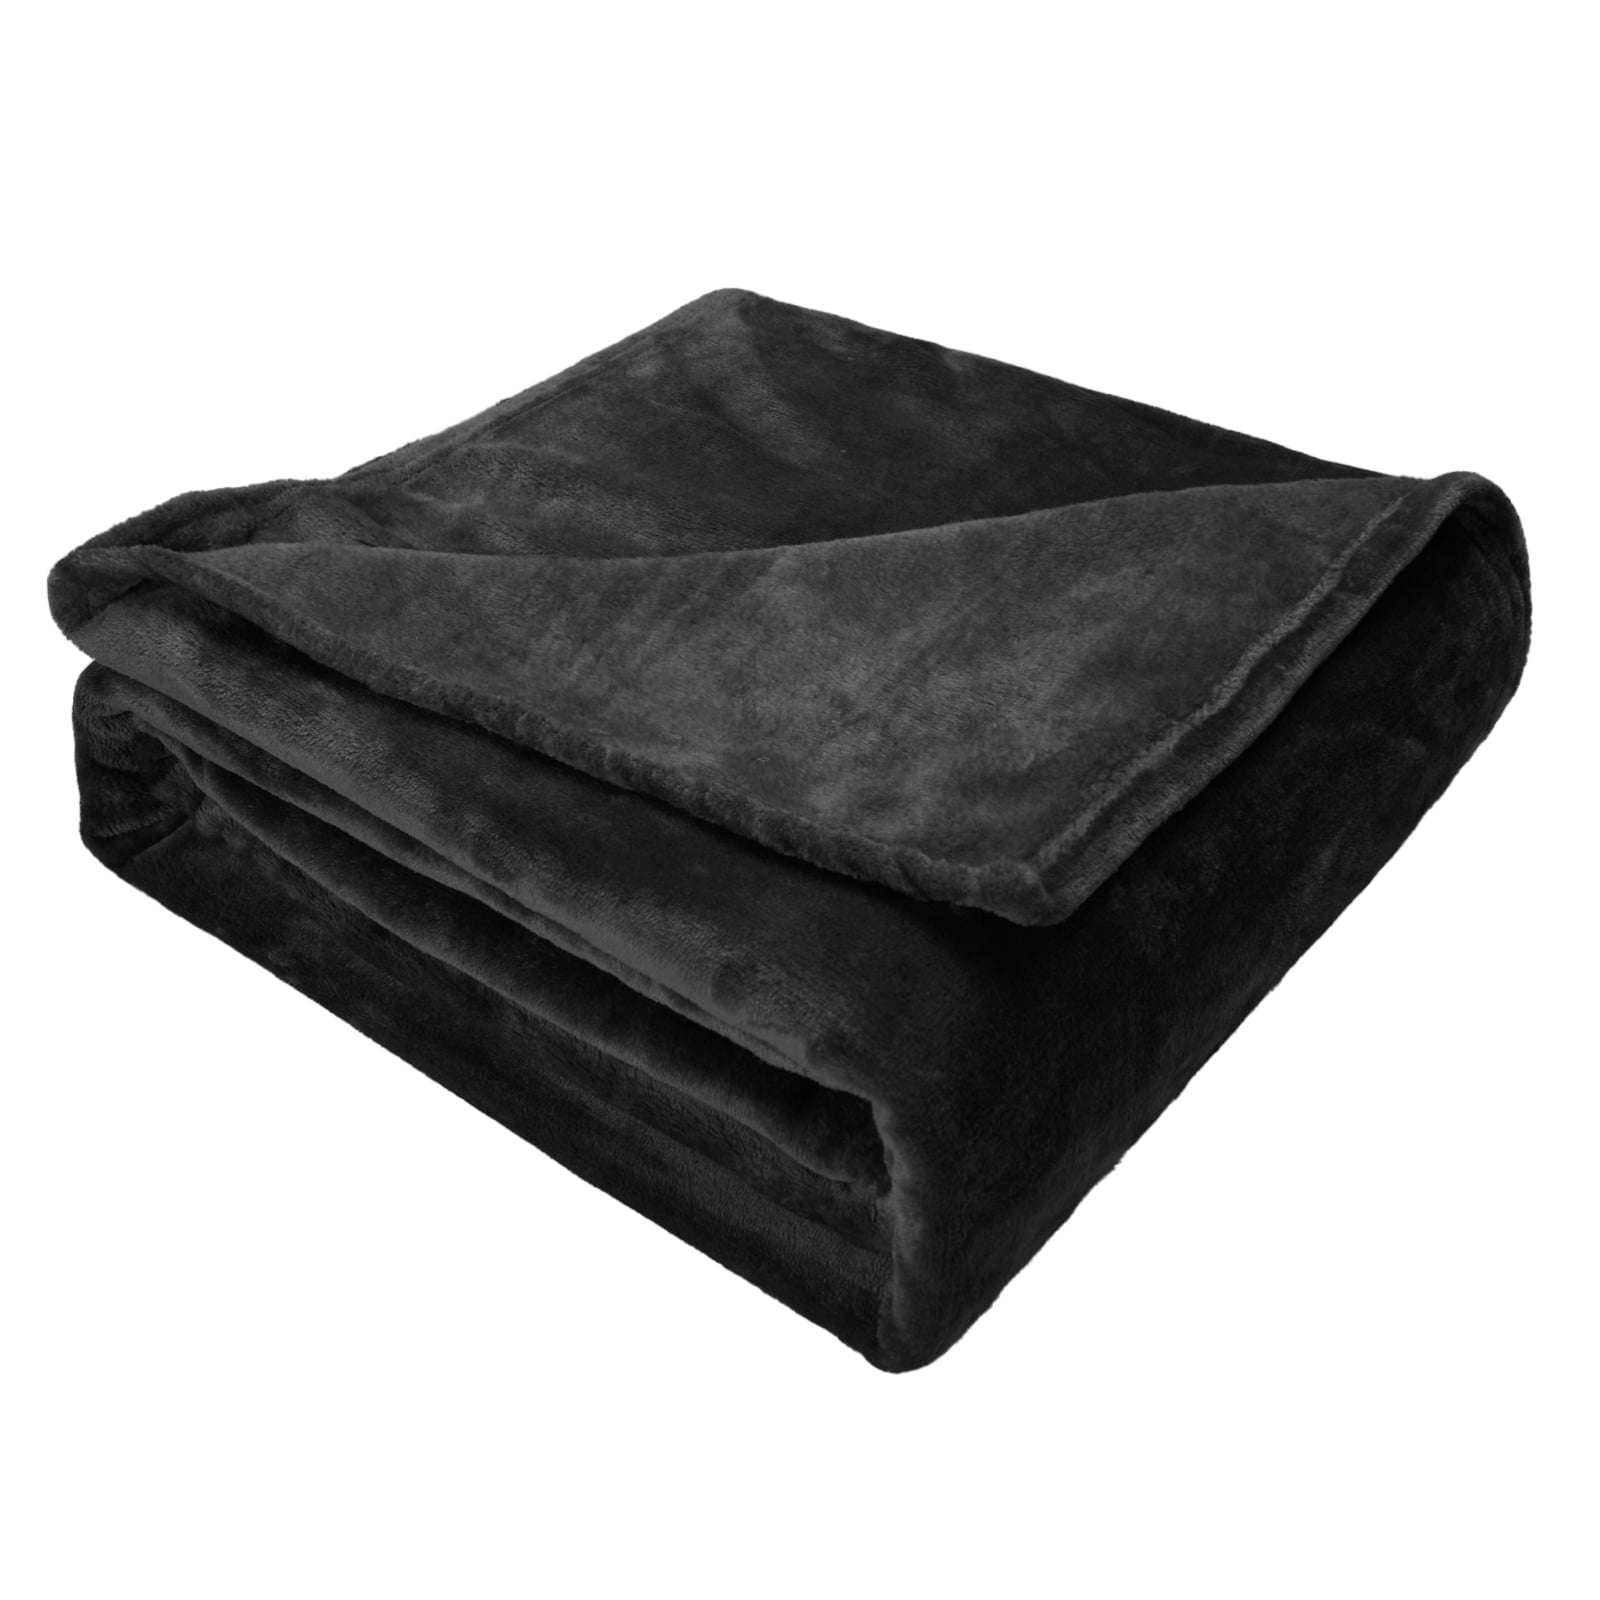  CozyLux Fleece Blanket Throw Black - 300GSM